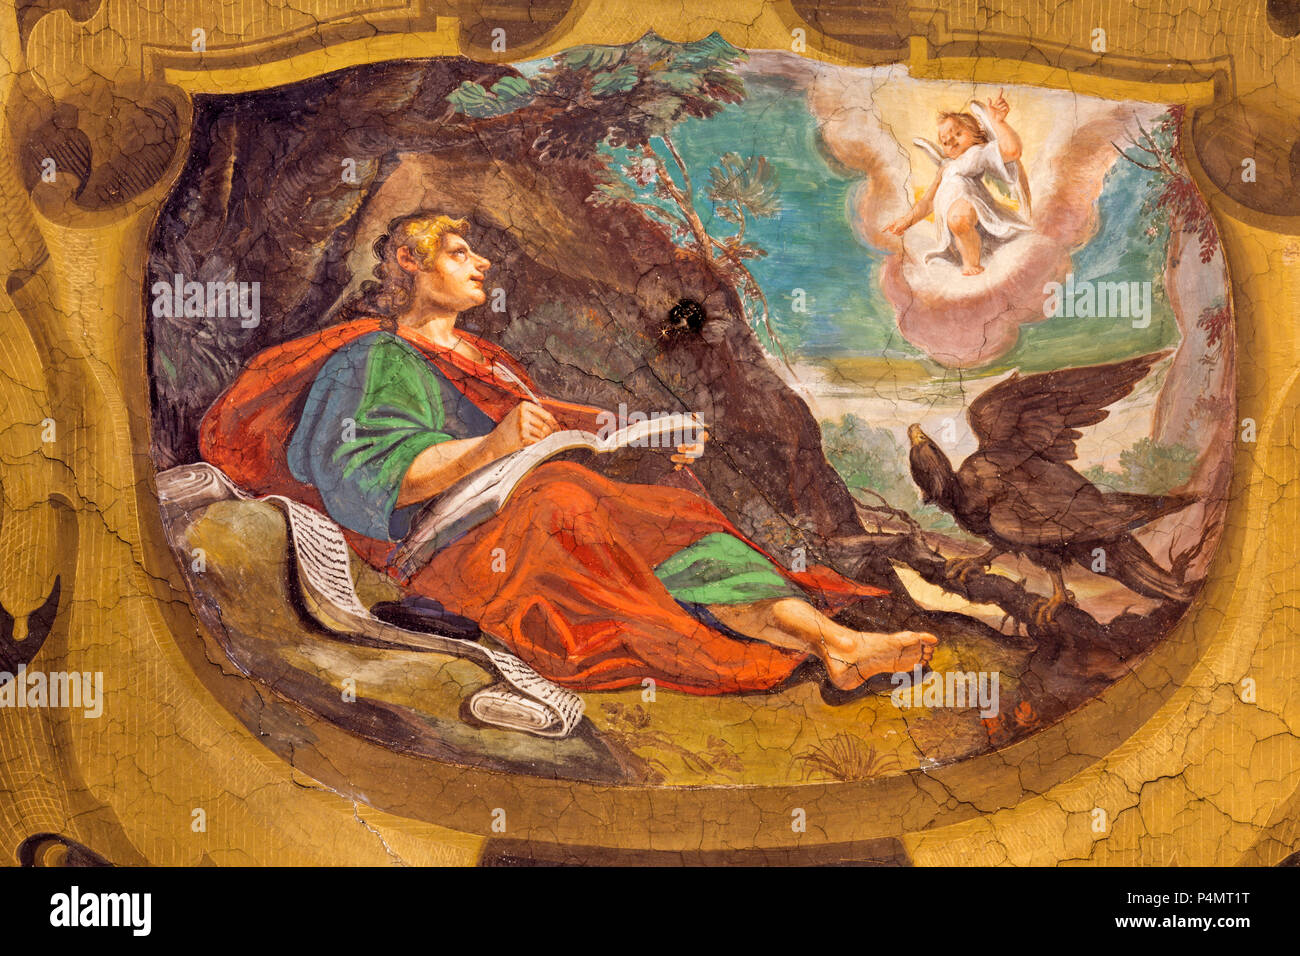 REGGIO EMILIA, Italien - 13 April, 2018: Das Fresko der Vision des Evangelisten Johannes auf der Insel Patmos in der Kirche Chiesa di San Giovanni Evangelis Stockfoto